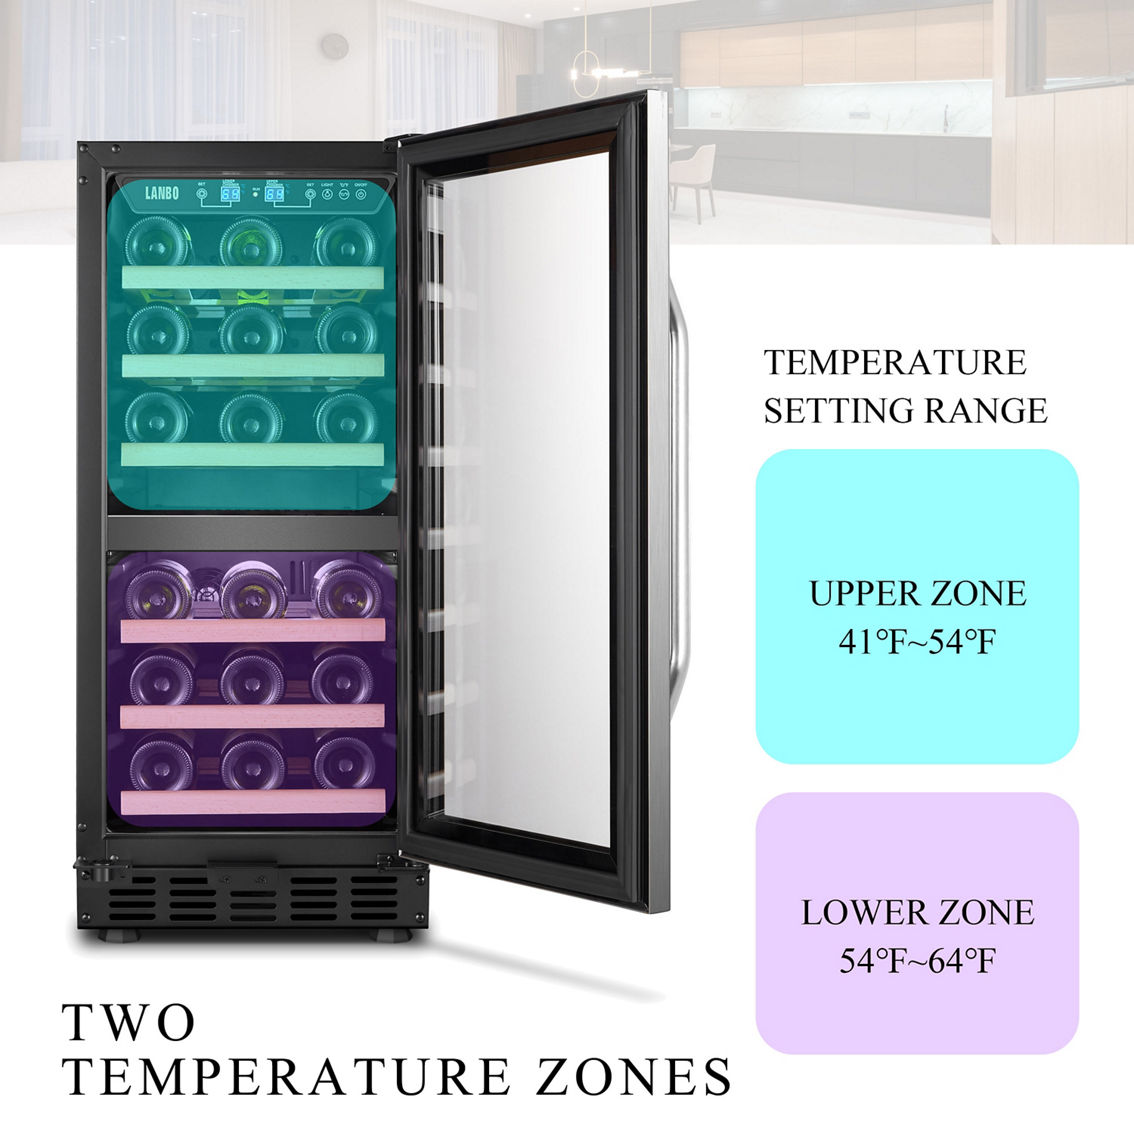 Lanbo 15 Inch Wine Cooler Refrigerator, 26 Bottle - Image 4 of 5